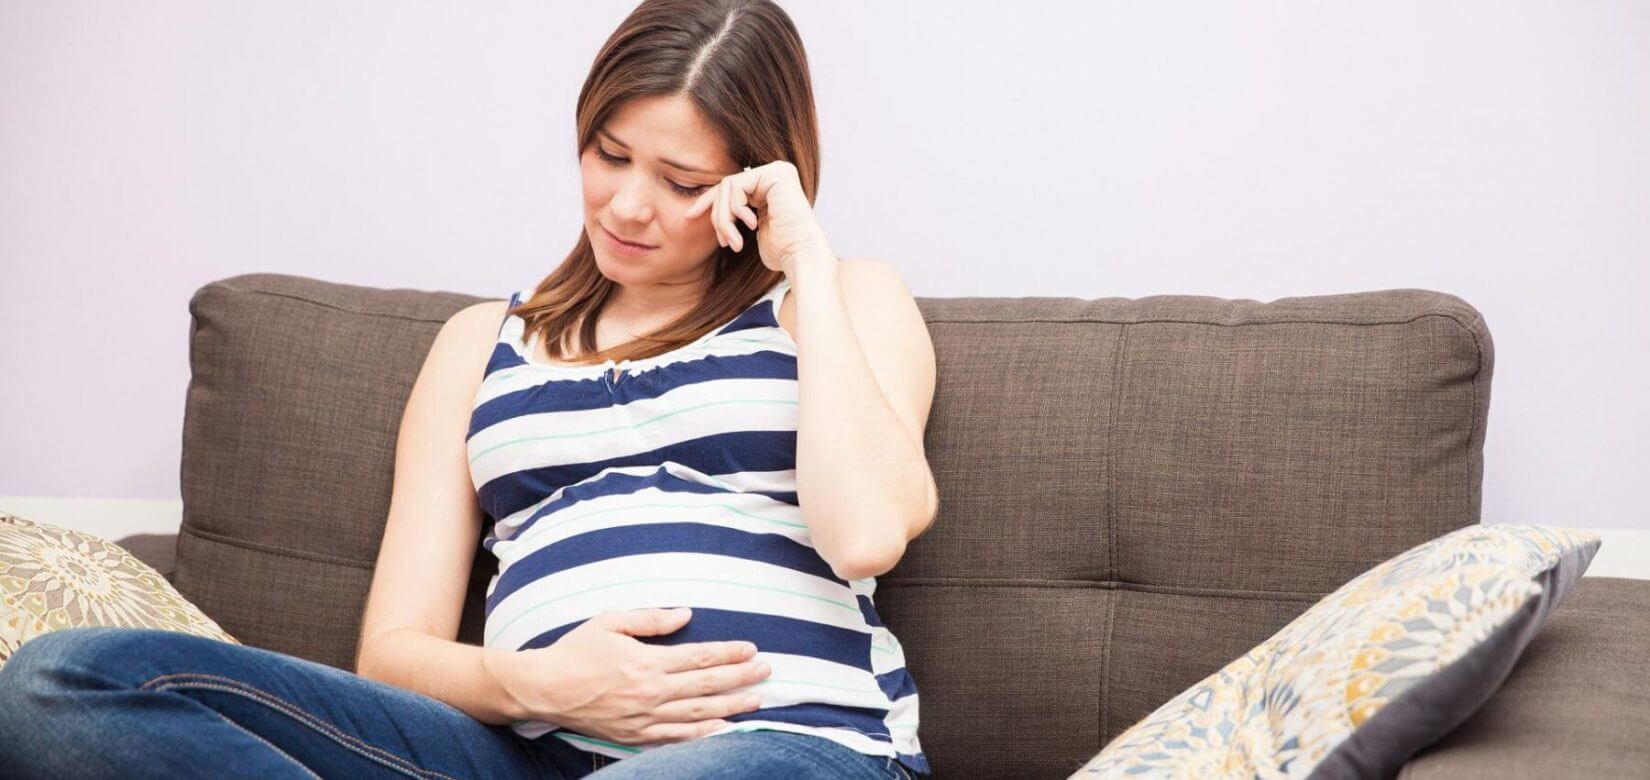 Κορονοϊός: Με ποιες σοβαρές επιπλοκές κινδυνεύουν οι έγκυες - Νέα έρευνα